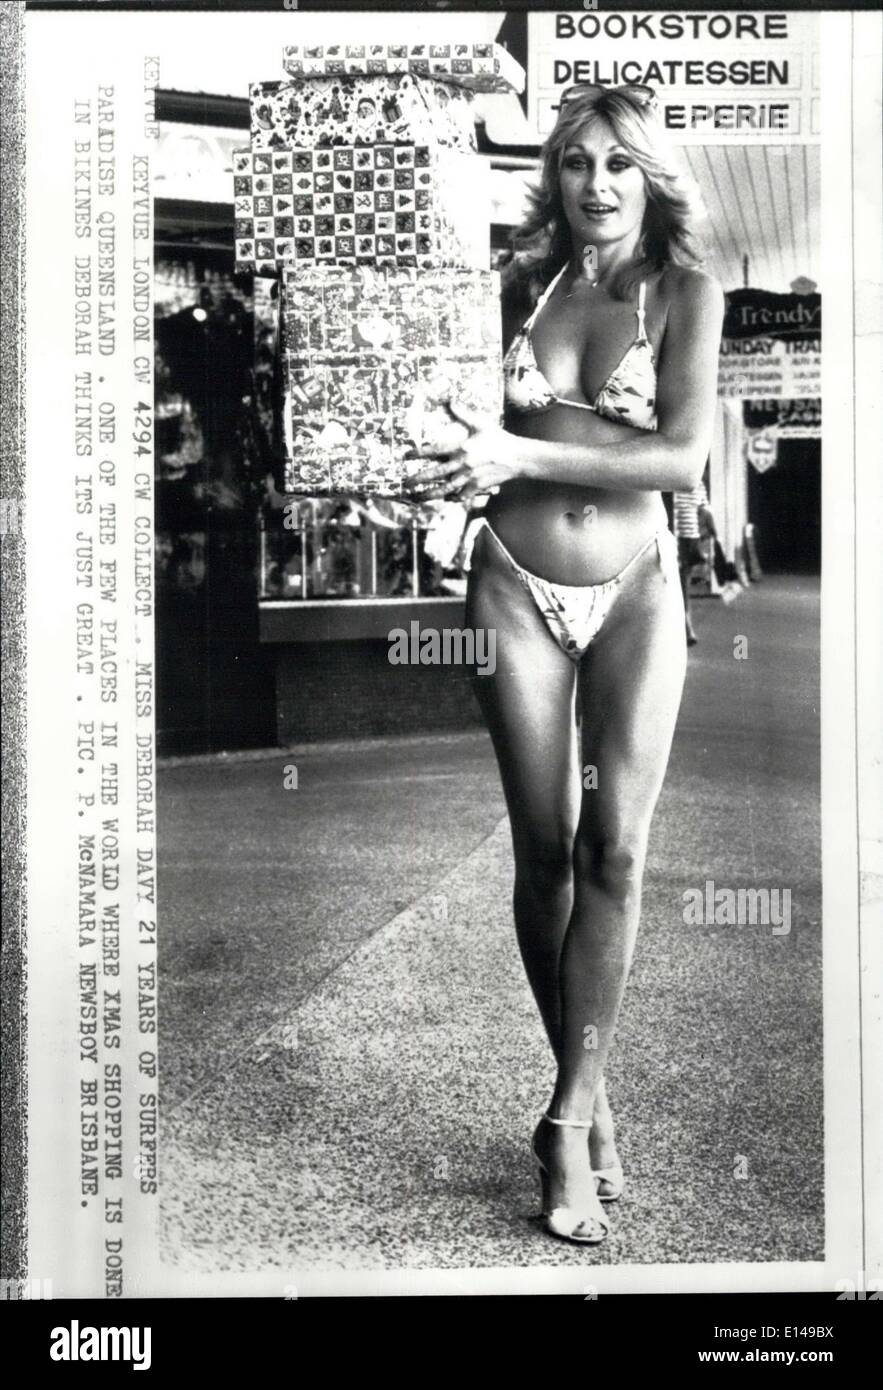 Le 17 avril 2012 - Mme Deborah Davy 21 ans de Surfers Paradise Queensland. L'un des rares endroits au monde où Xmas shopping est fait dans Bikines Deborah pense sa formidable. P. Pic Mcnamara crieur de Brisbane. Banque D'Images